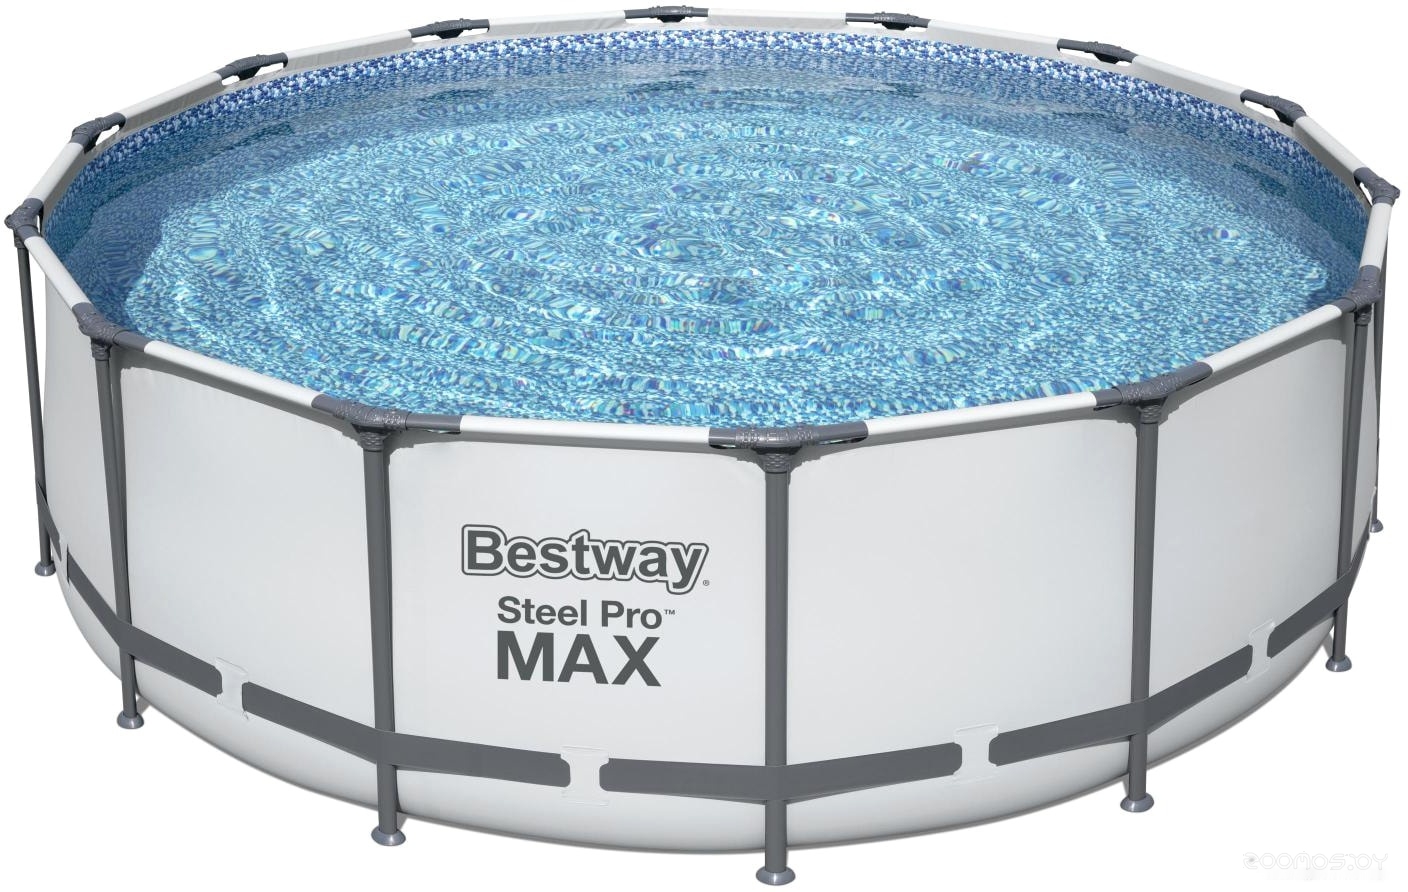   Bestway Steel Pro Max 5612X (427x122)     